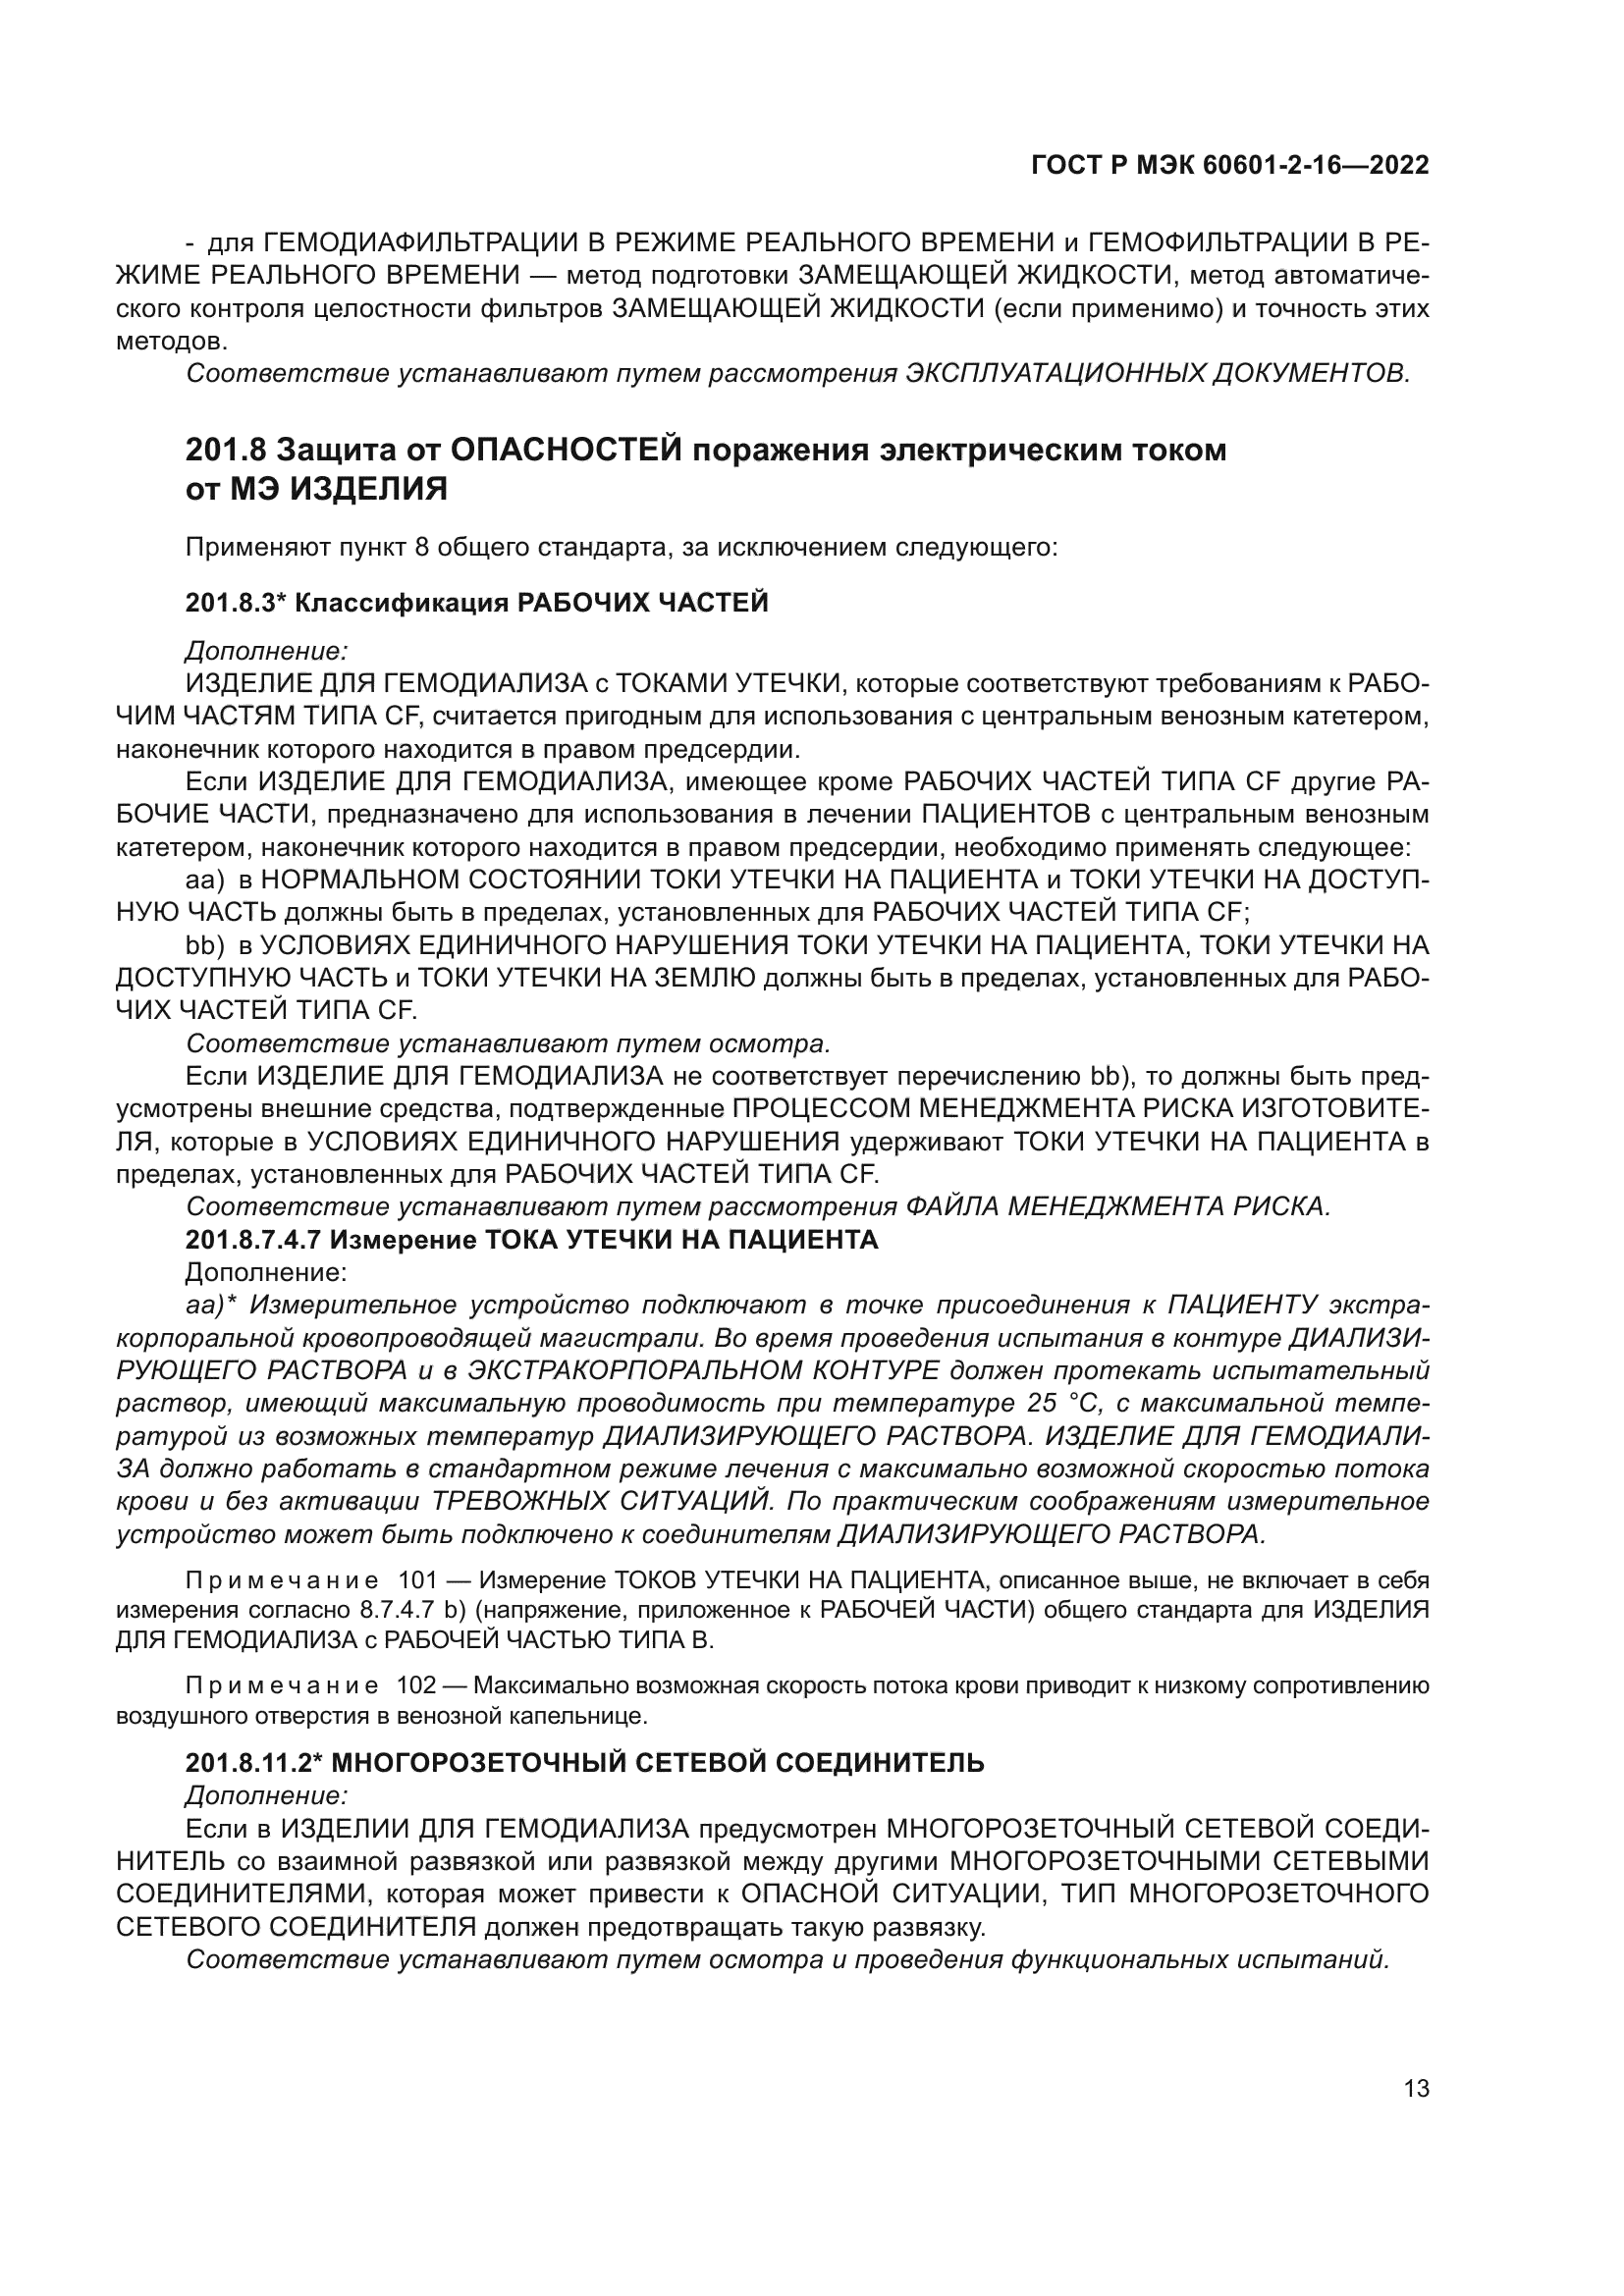 ГОСТ Р МЭК 60601-2-16-2022